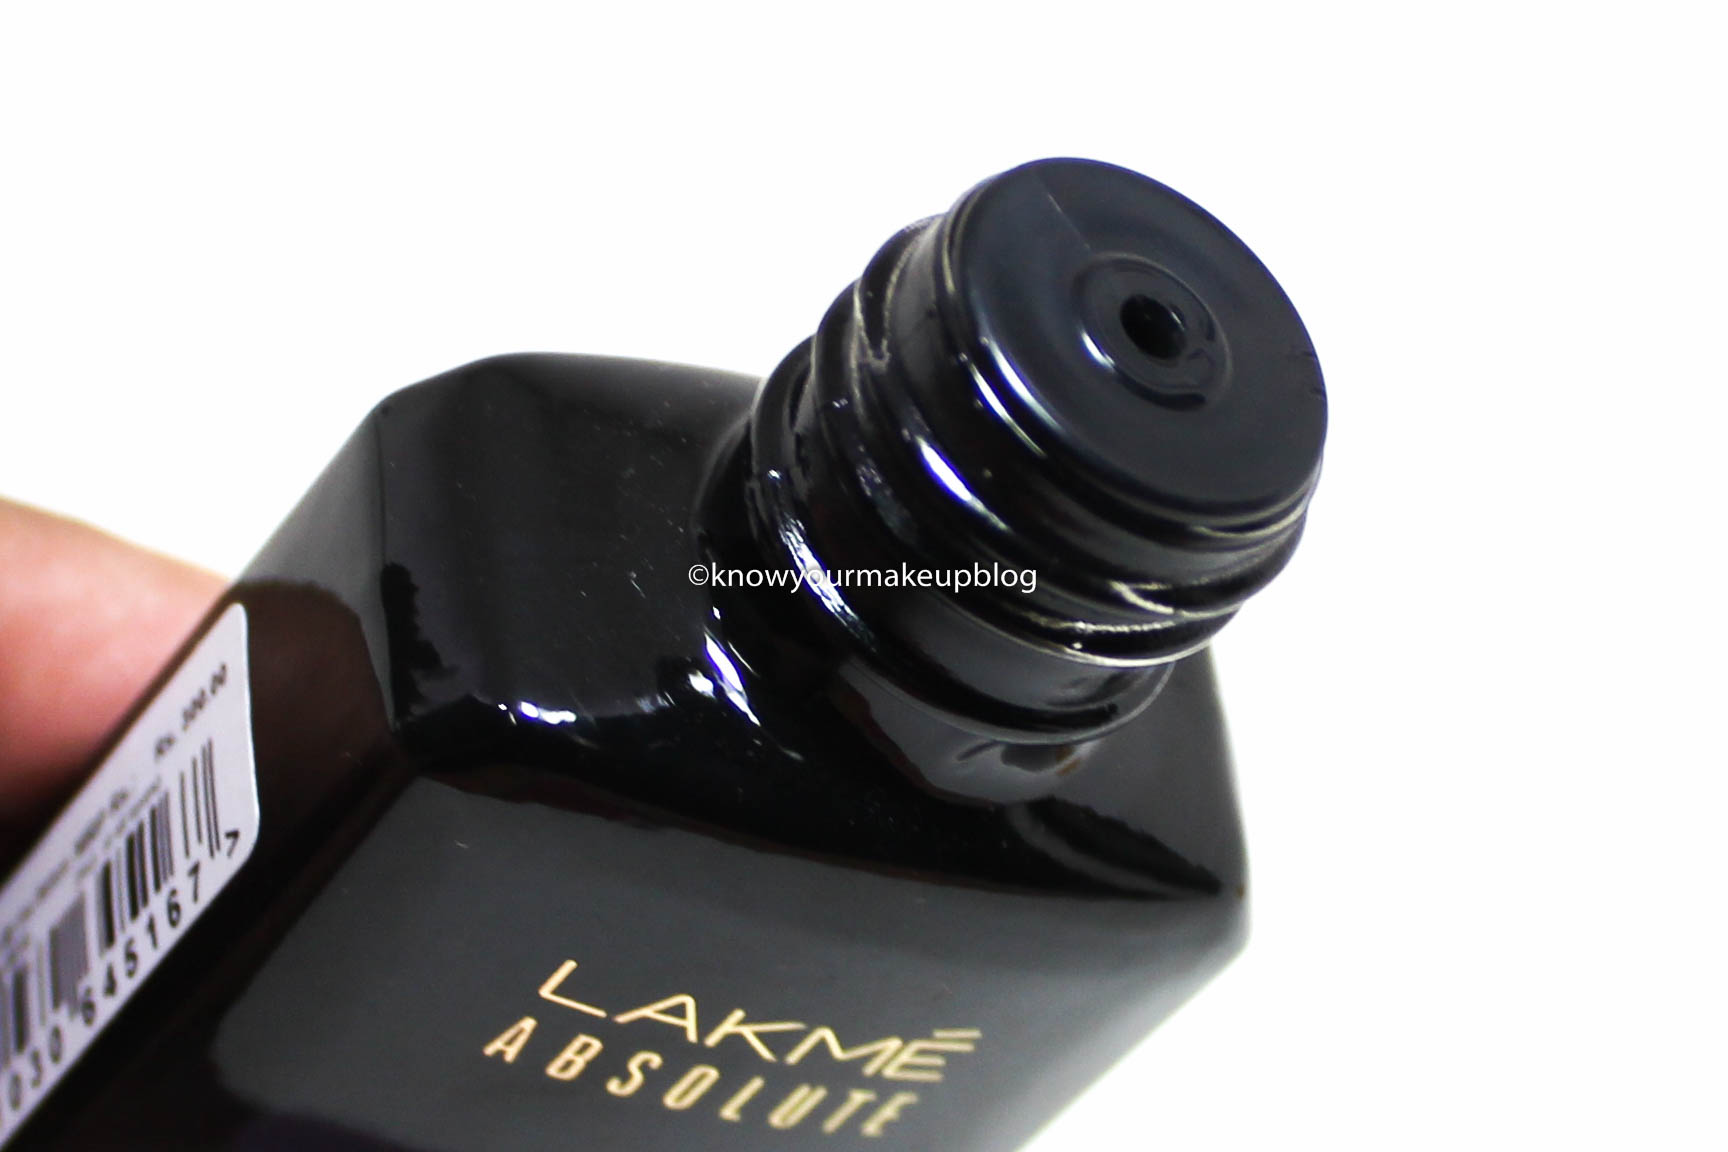 Buy Lakmé 9 to 5 Primer + Gloss Nail Color Online - LakméIndia – Lakmē